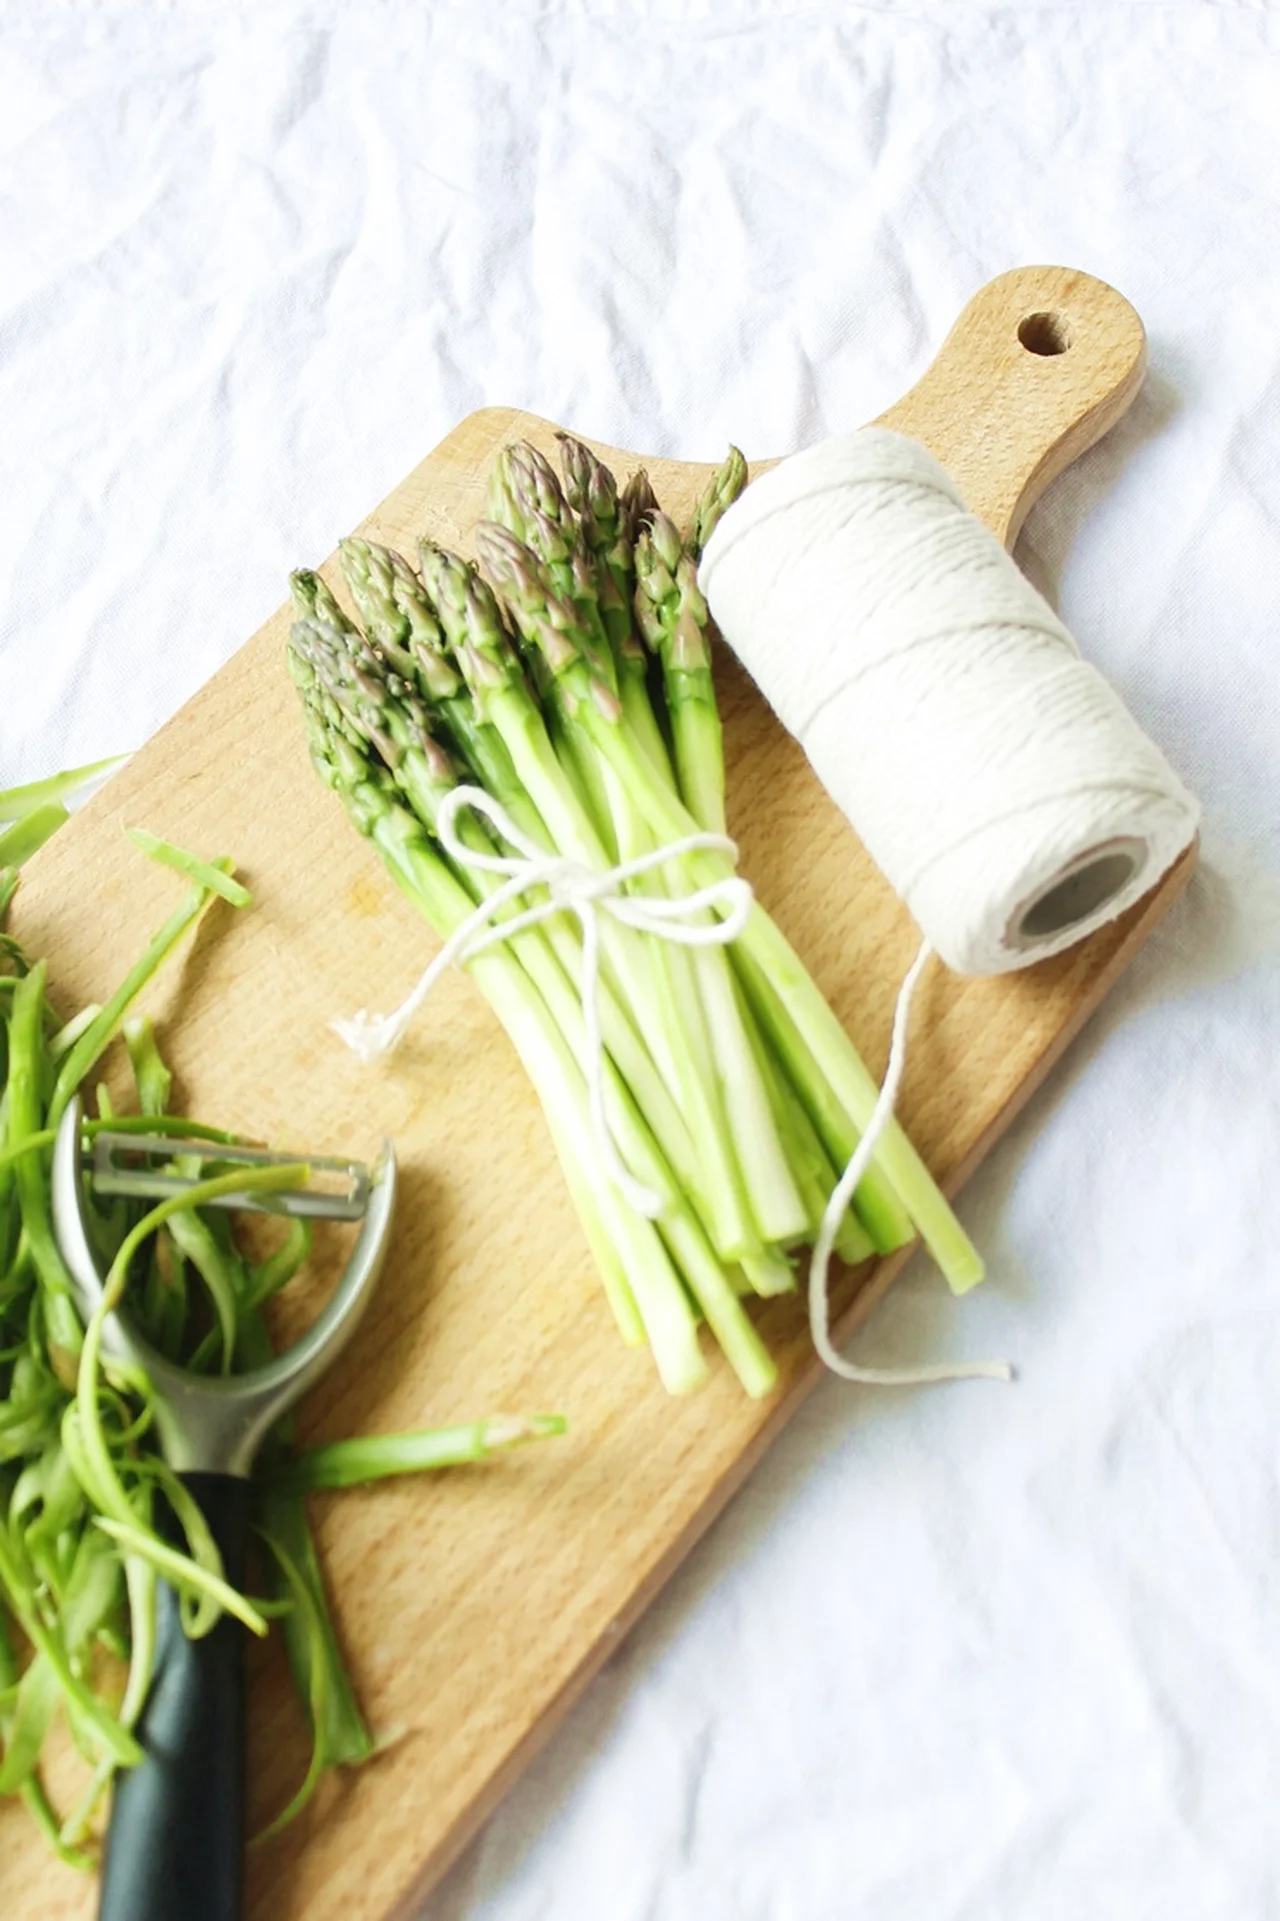 Jak przygotować i gotować szparagi l Jak wybrać i obrać szparagi, żeby nie były łykowate? – Poradnik